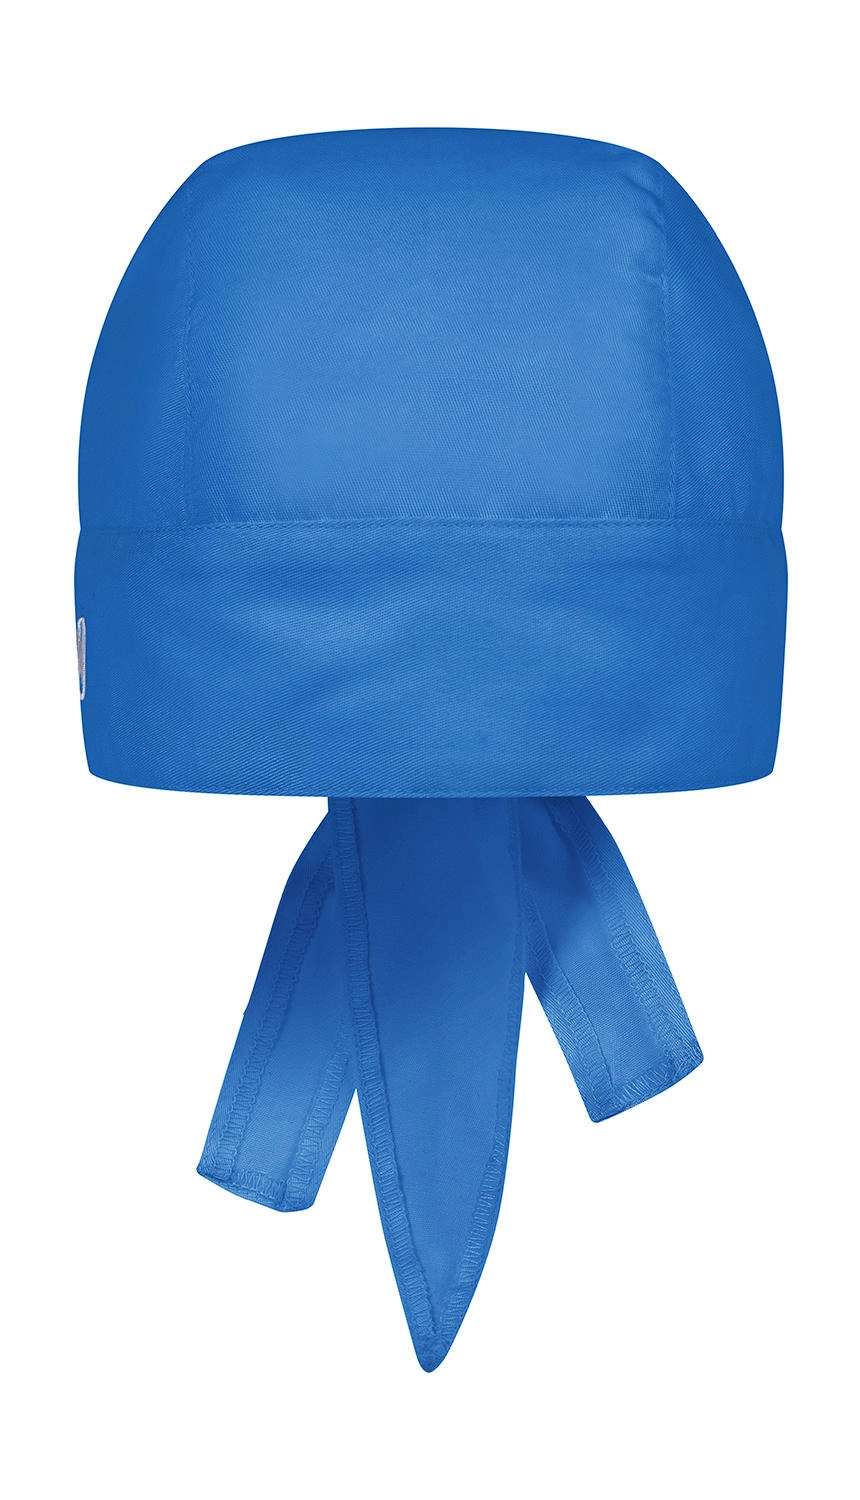 Bandana Essential zum Besticken und Bedrucken in der Farbe Royal Blue mit Ihren Logo, Schriftzug oder Motiv.